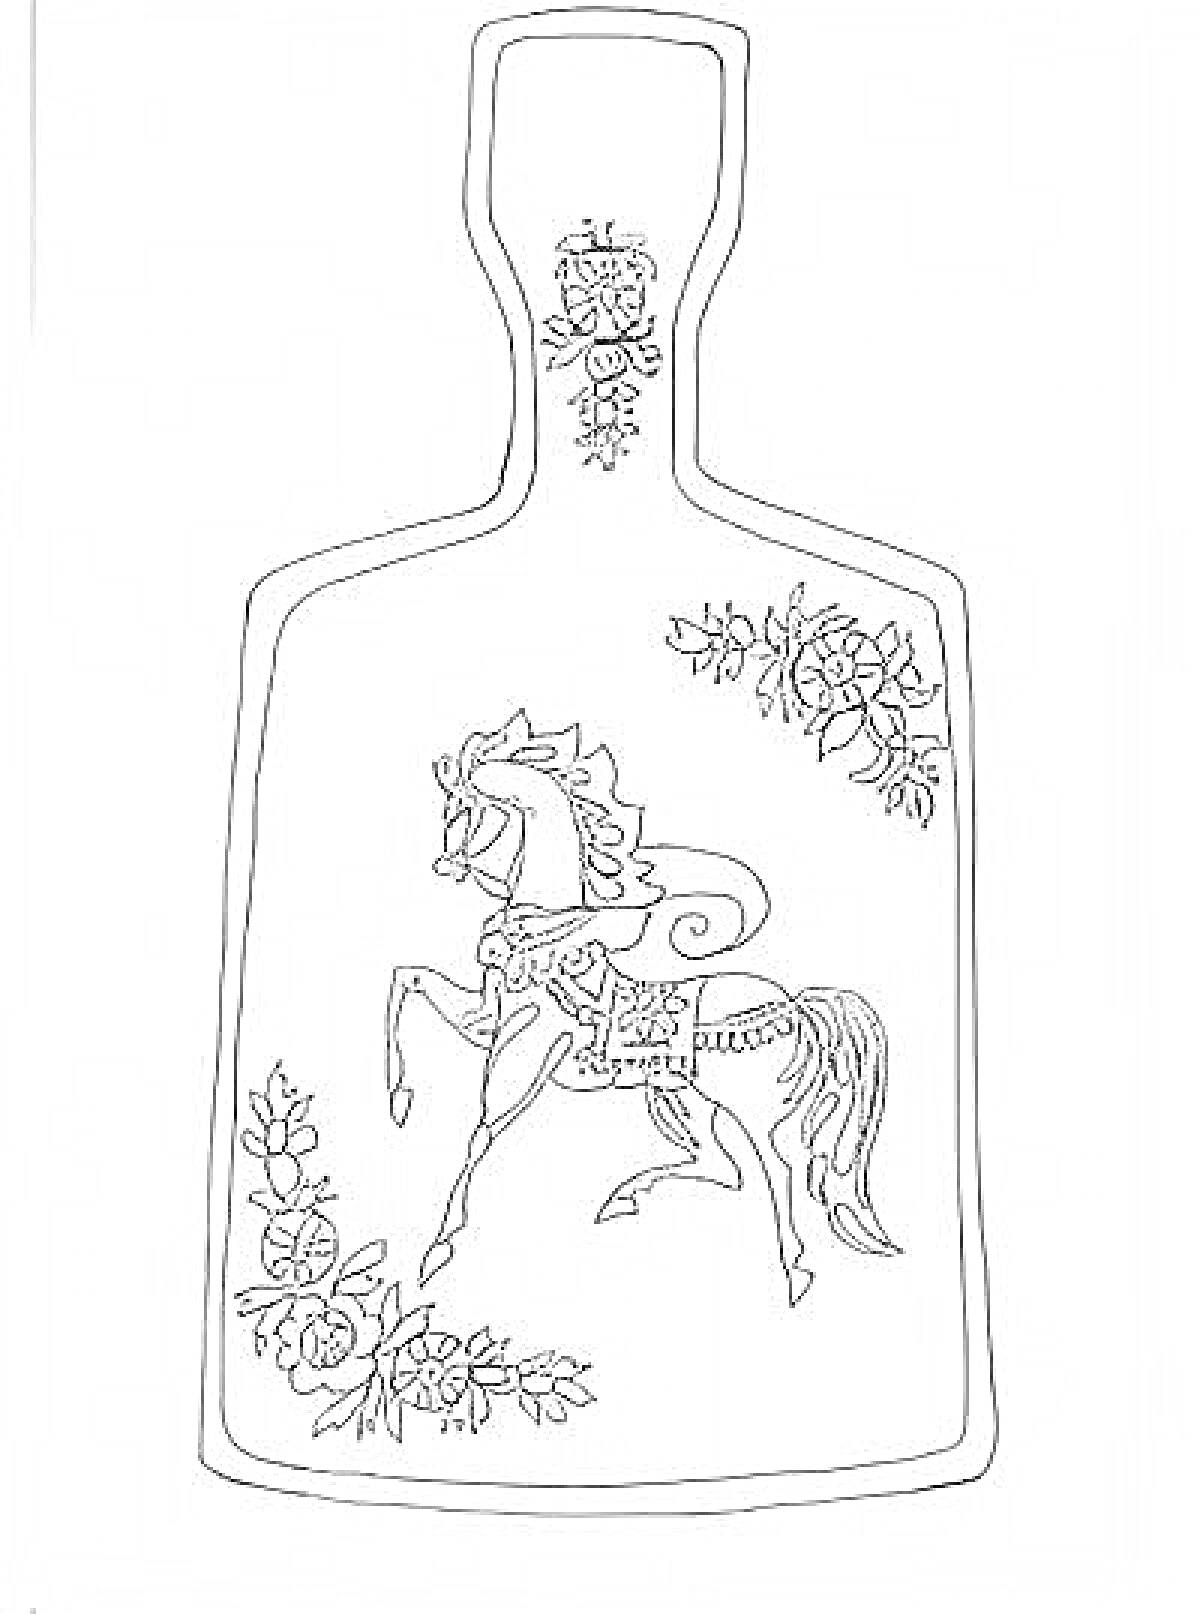 Раскраска Разделочная доска с городецкой росписью, изображение коня, цветы сверху и снизу